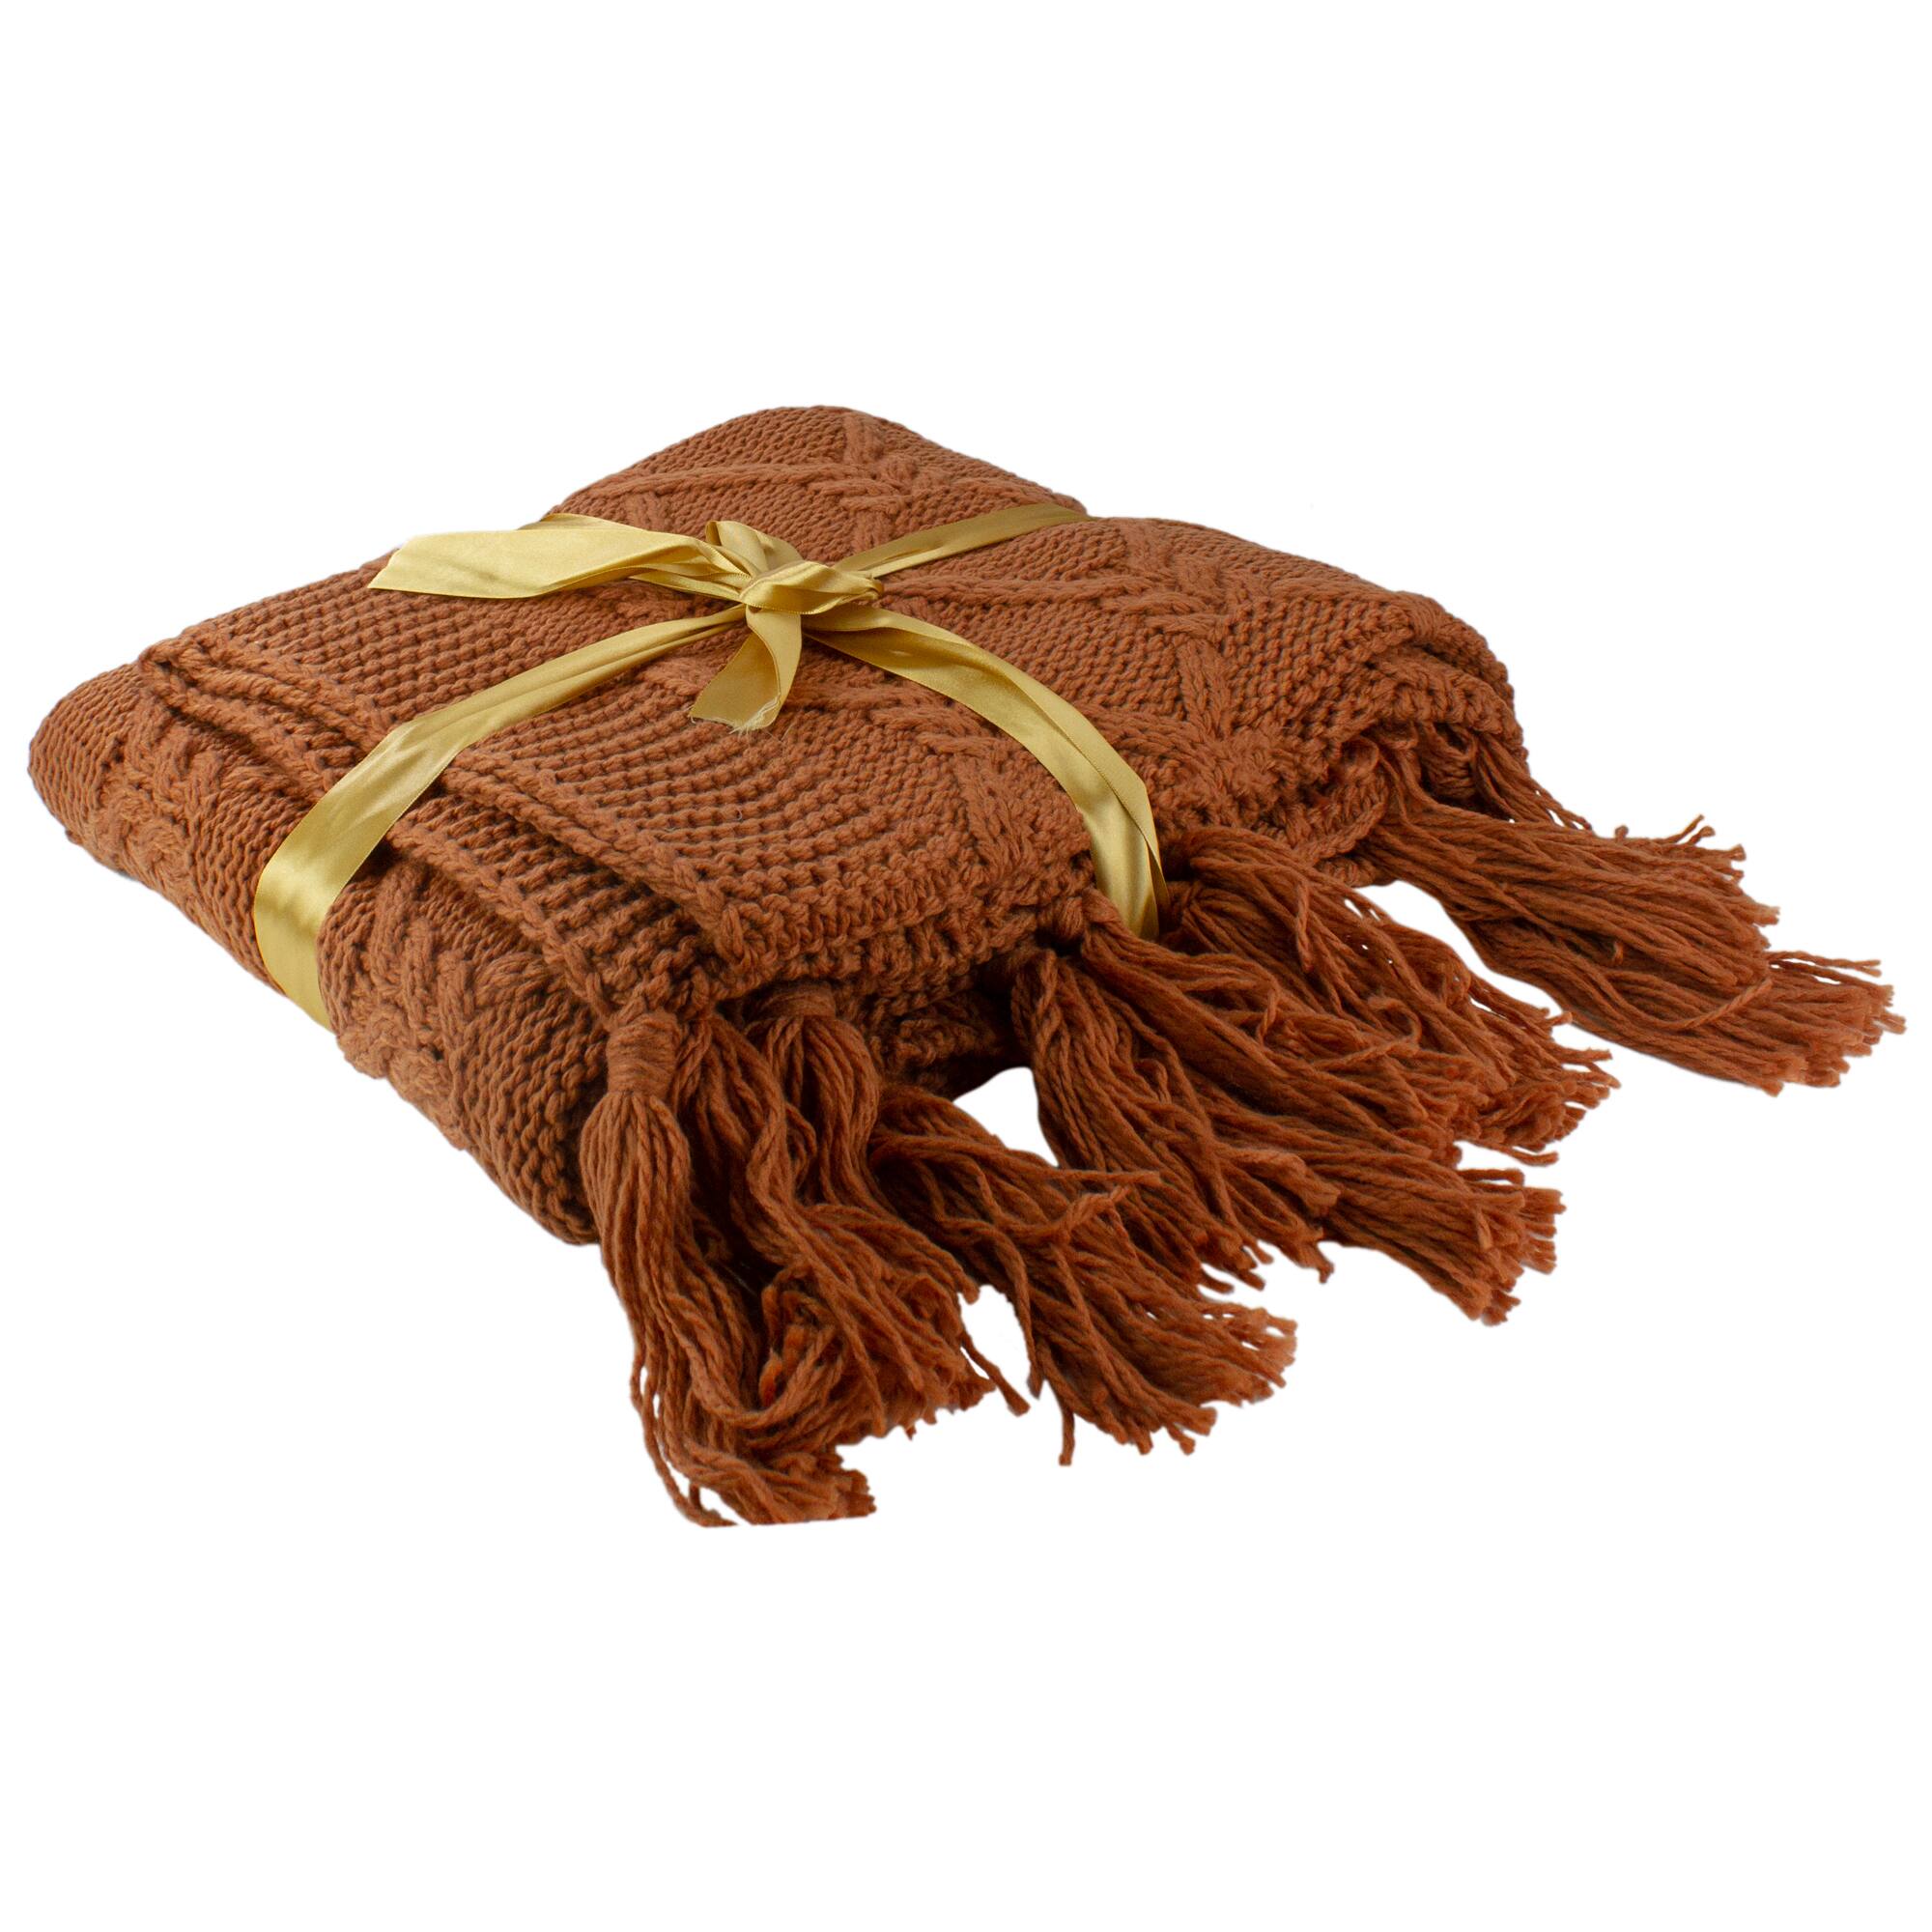 Golden Ochre Knit Throw Blanket With Tassels